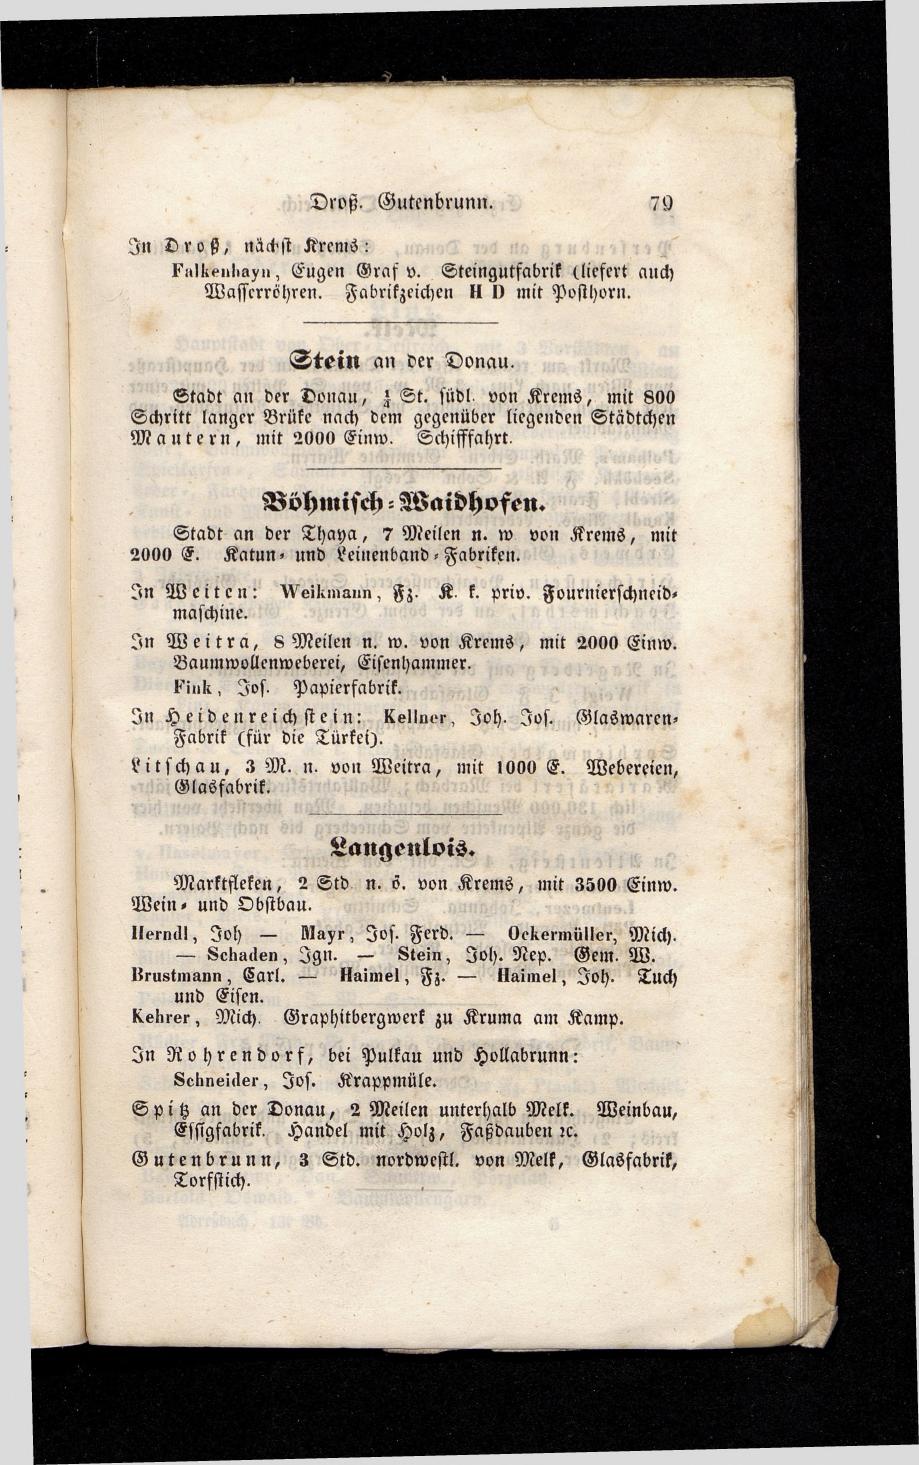 Grosses Adressbuch der Kaufleute. No. 13. Oesterreich ober u. unter der Enns 1844 - Seite 83